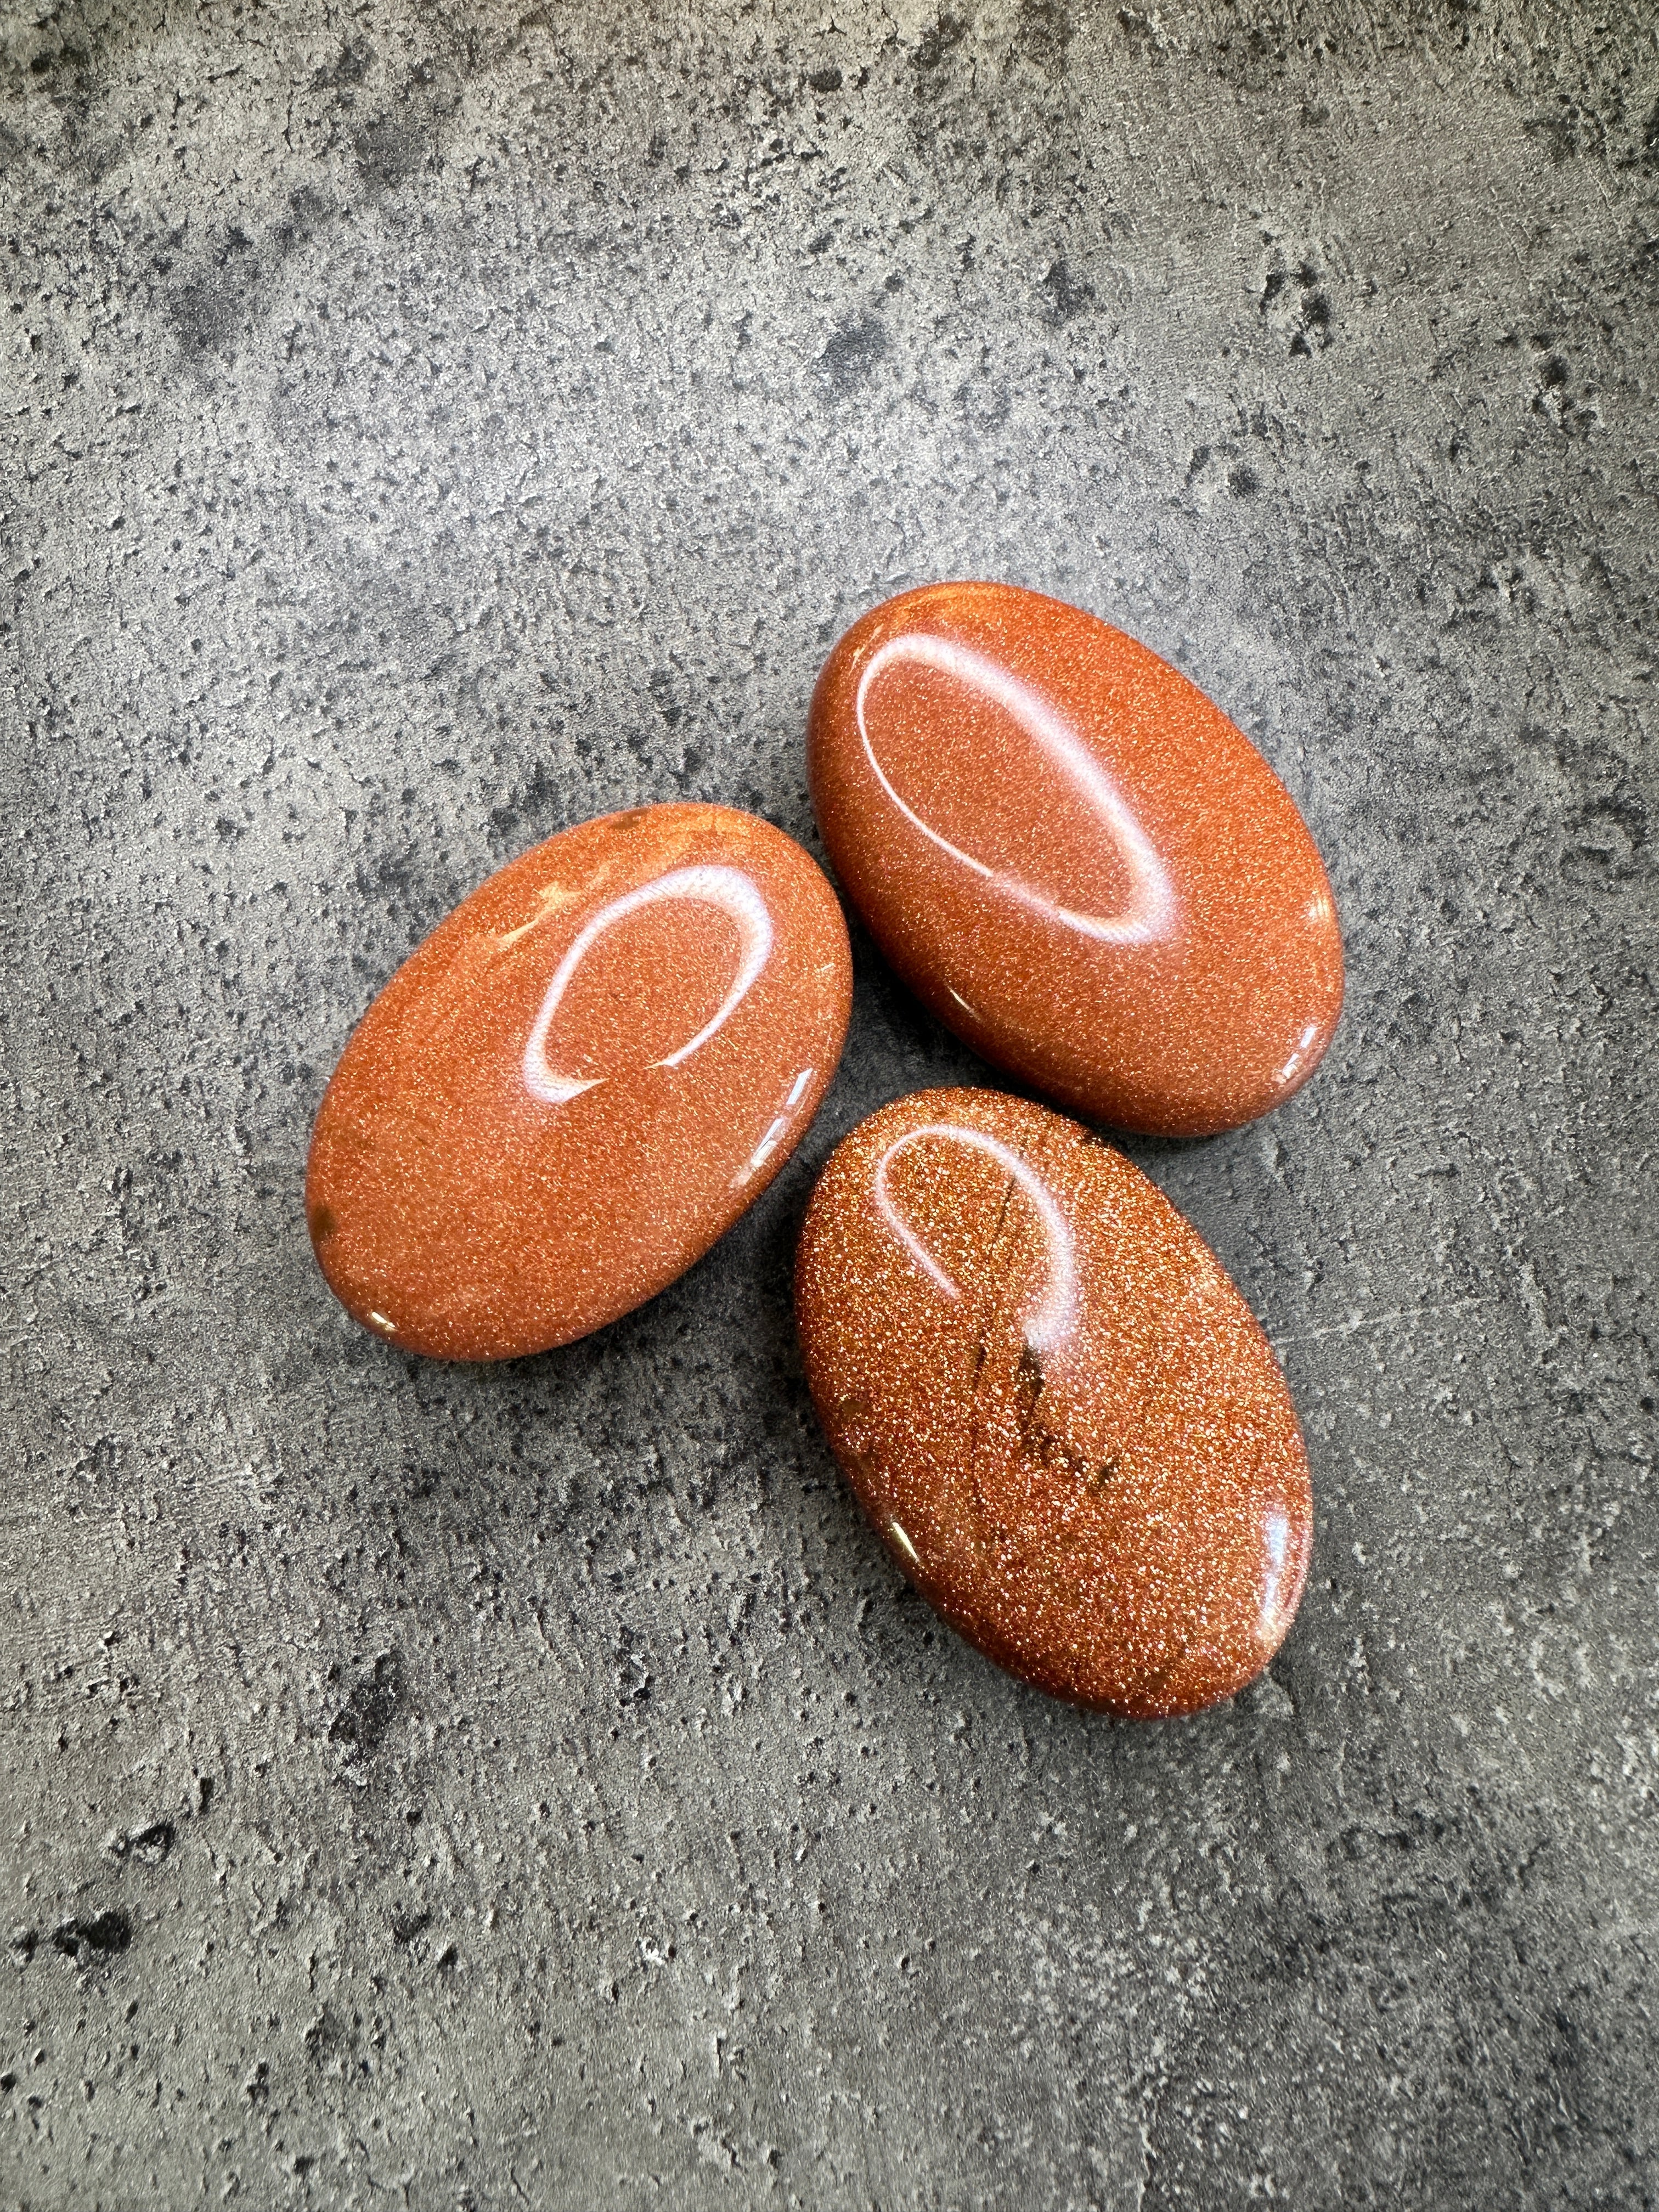 Goldstone - Palm stone